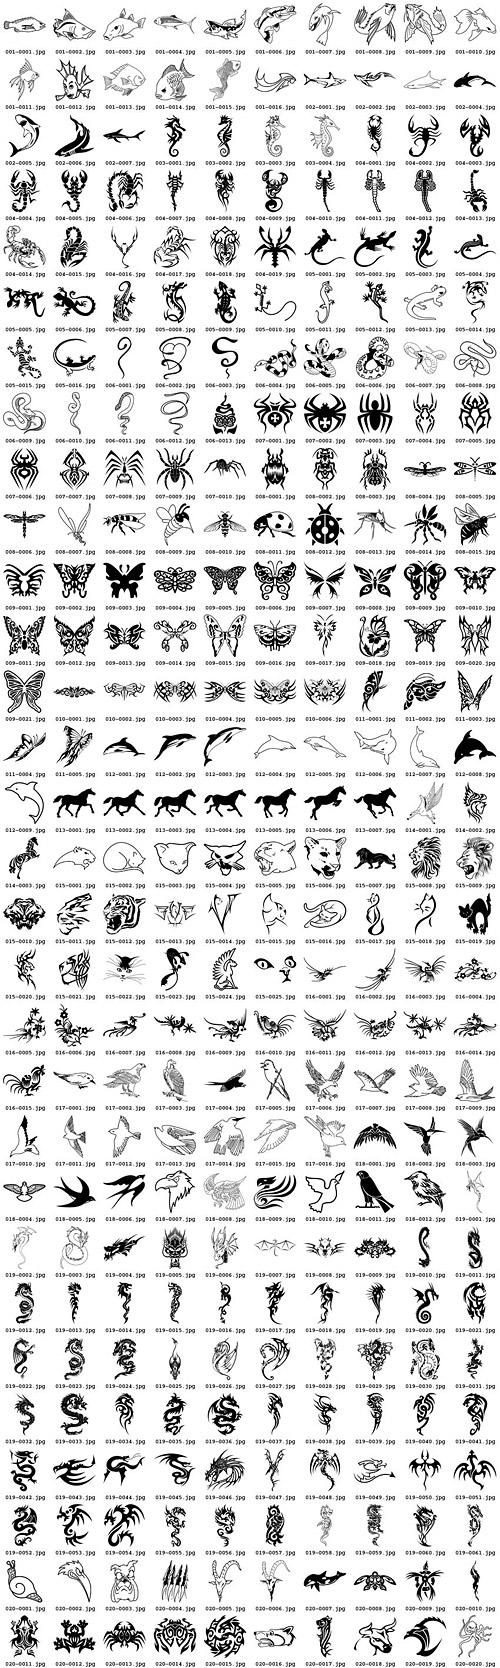 300 ของ totem สัตว์ต่าง ๆ